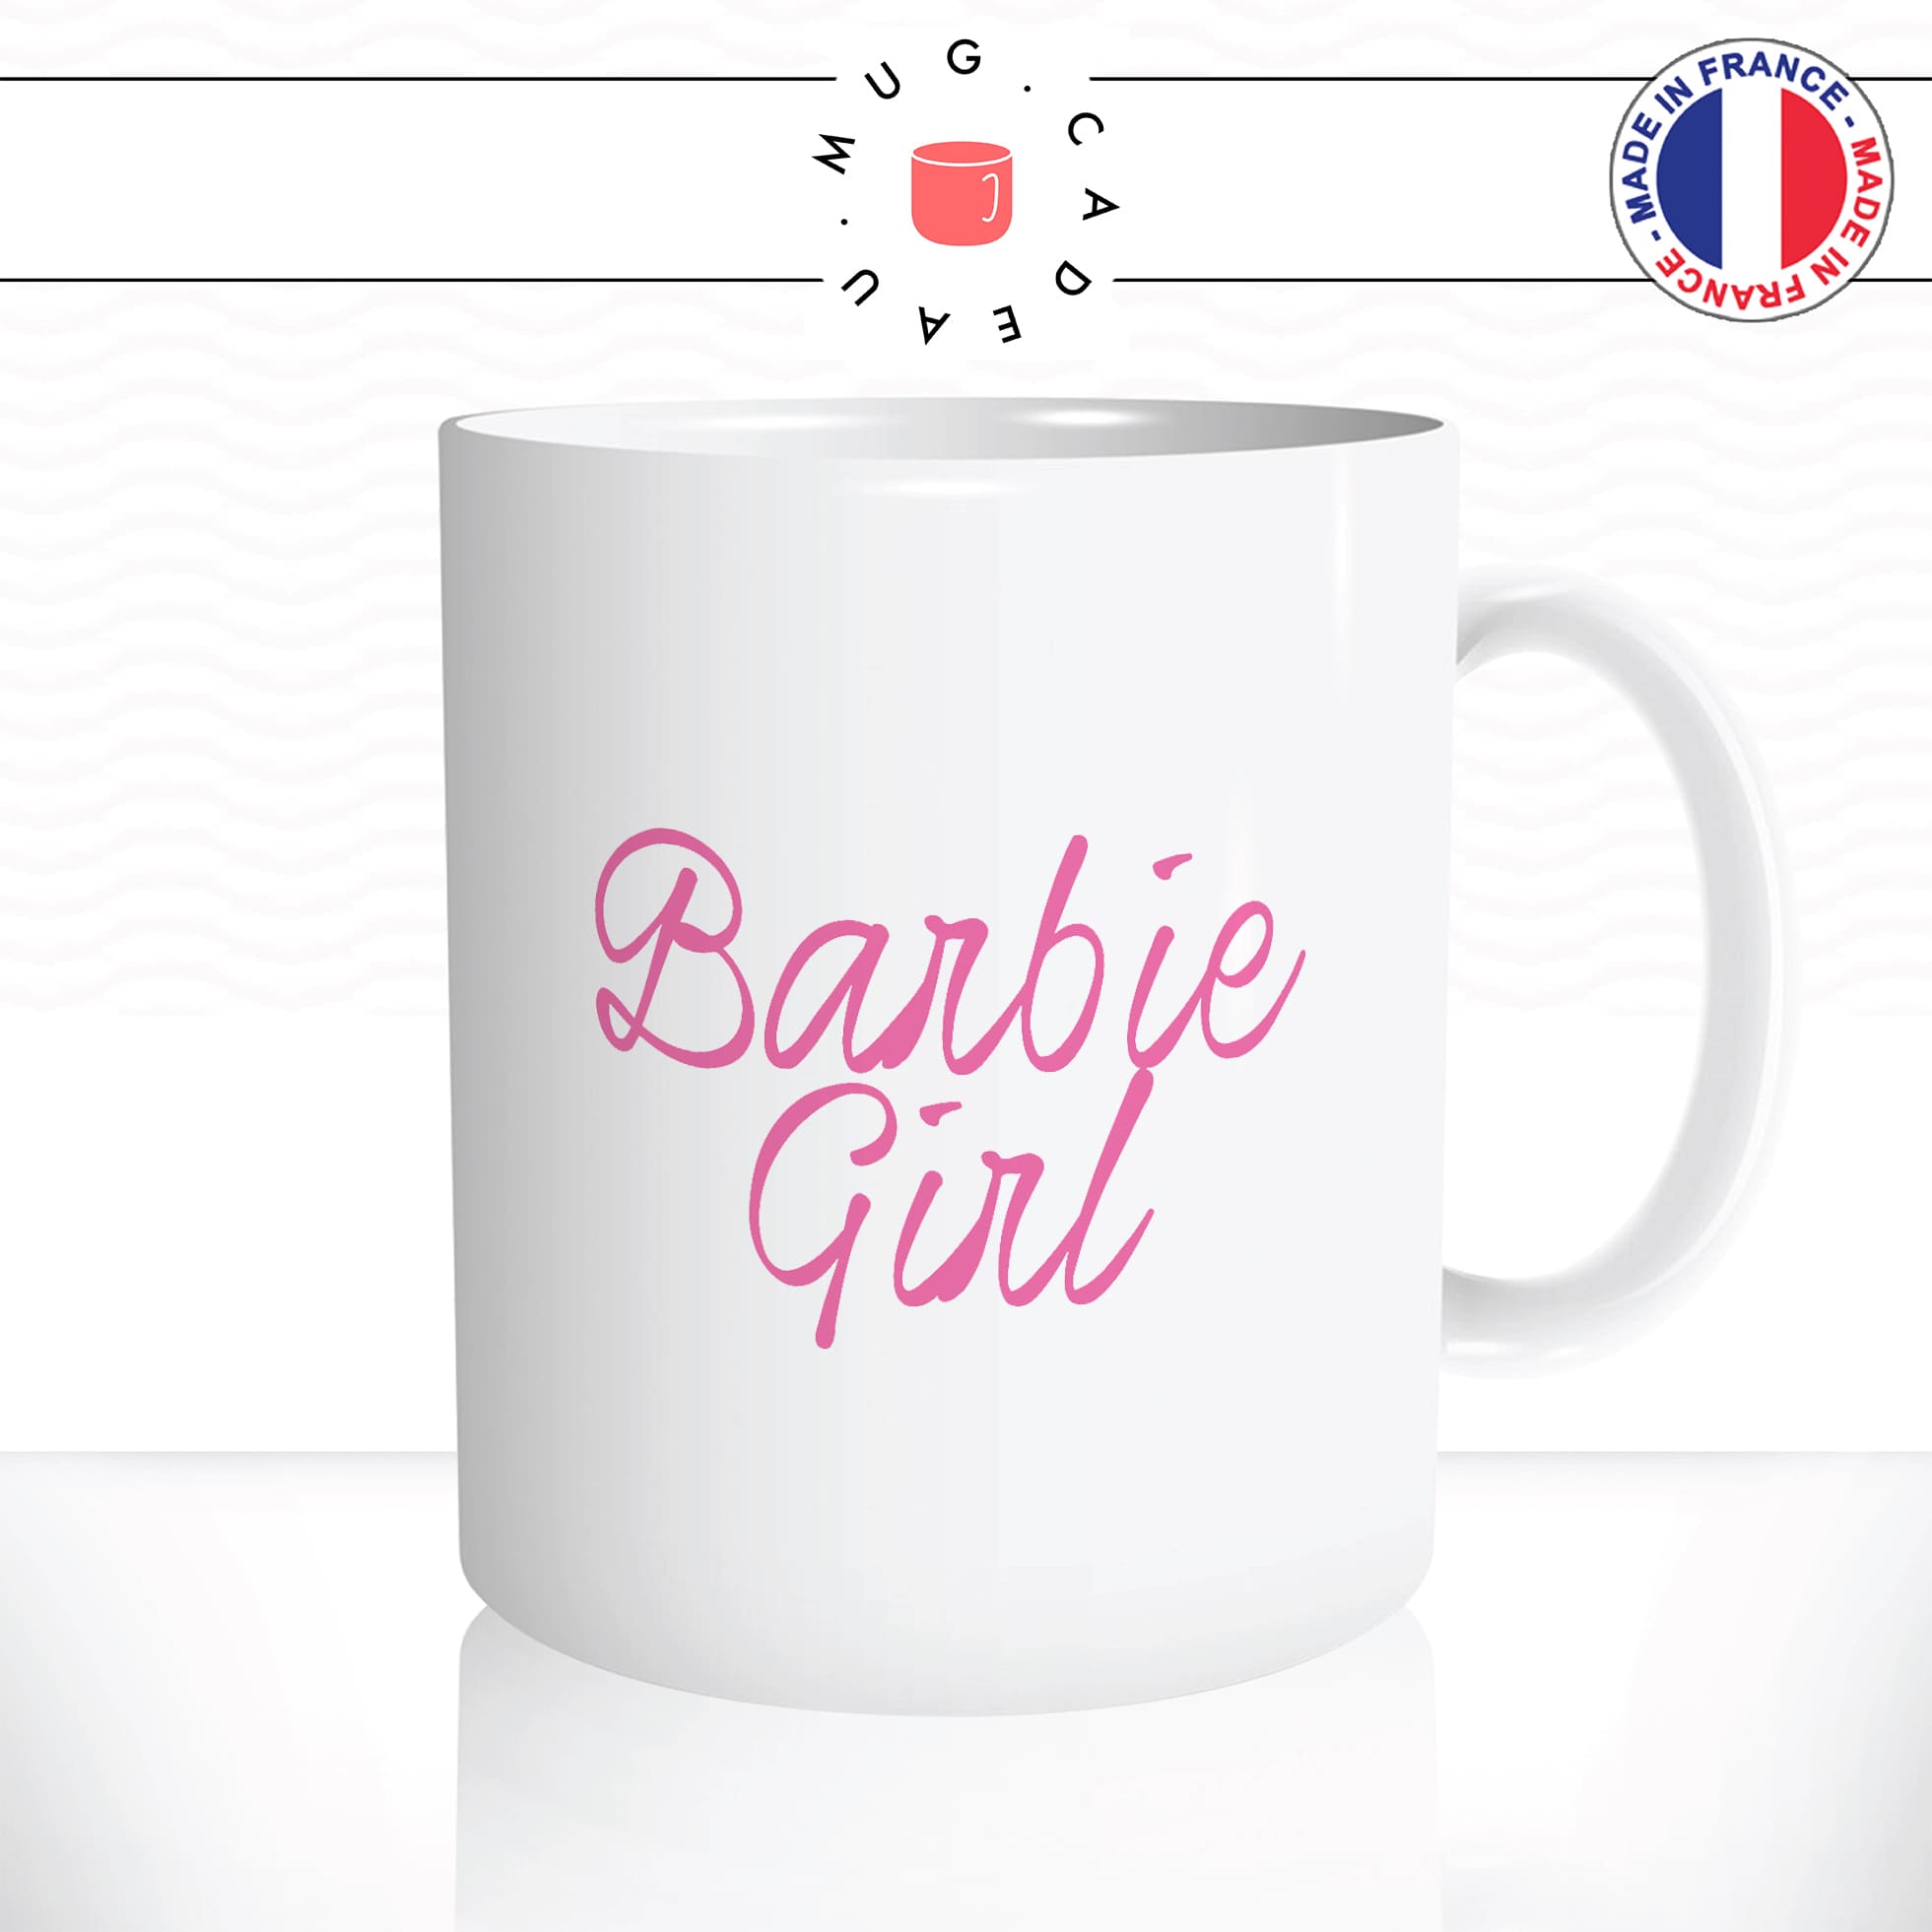 mug-tasse-blanc-unique-barbie-girl-rose-girly-jouet-homme-femme-parodie-chanson-humour-fun-cool-idée-cadeau-original-personnalisé2